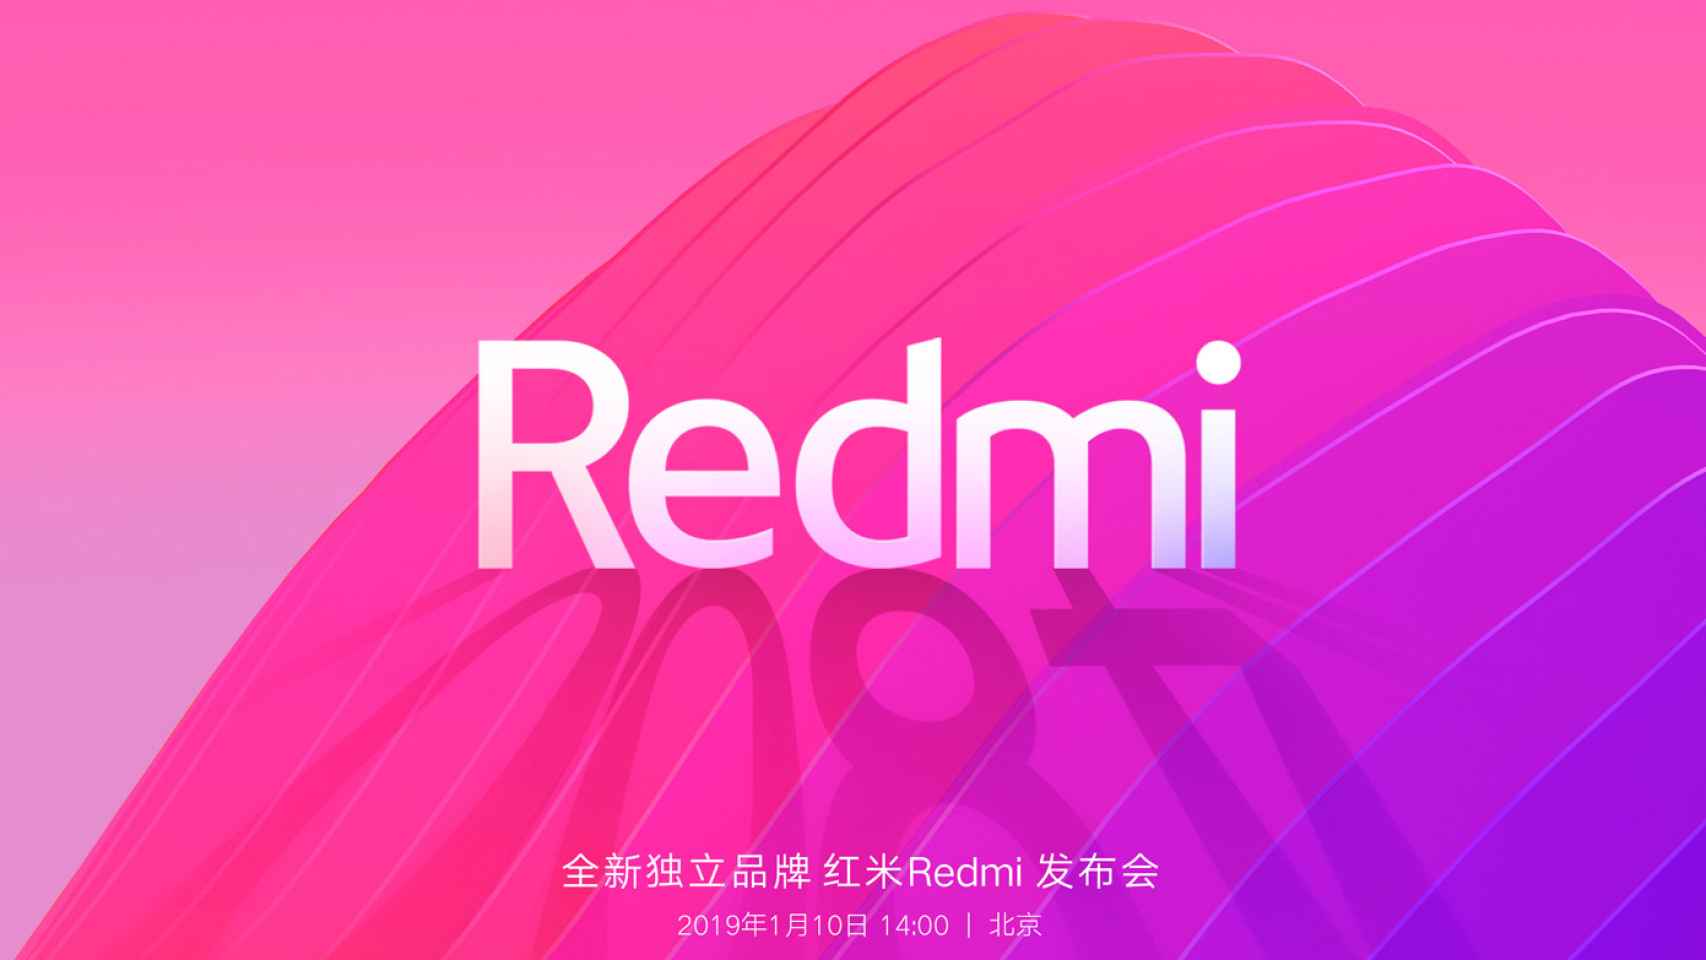 Xiaomi se divide: Los Redmi se convierten en marca independiente